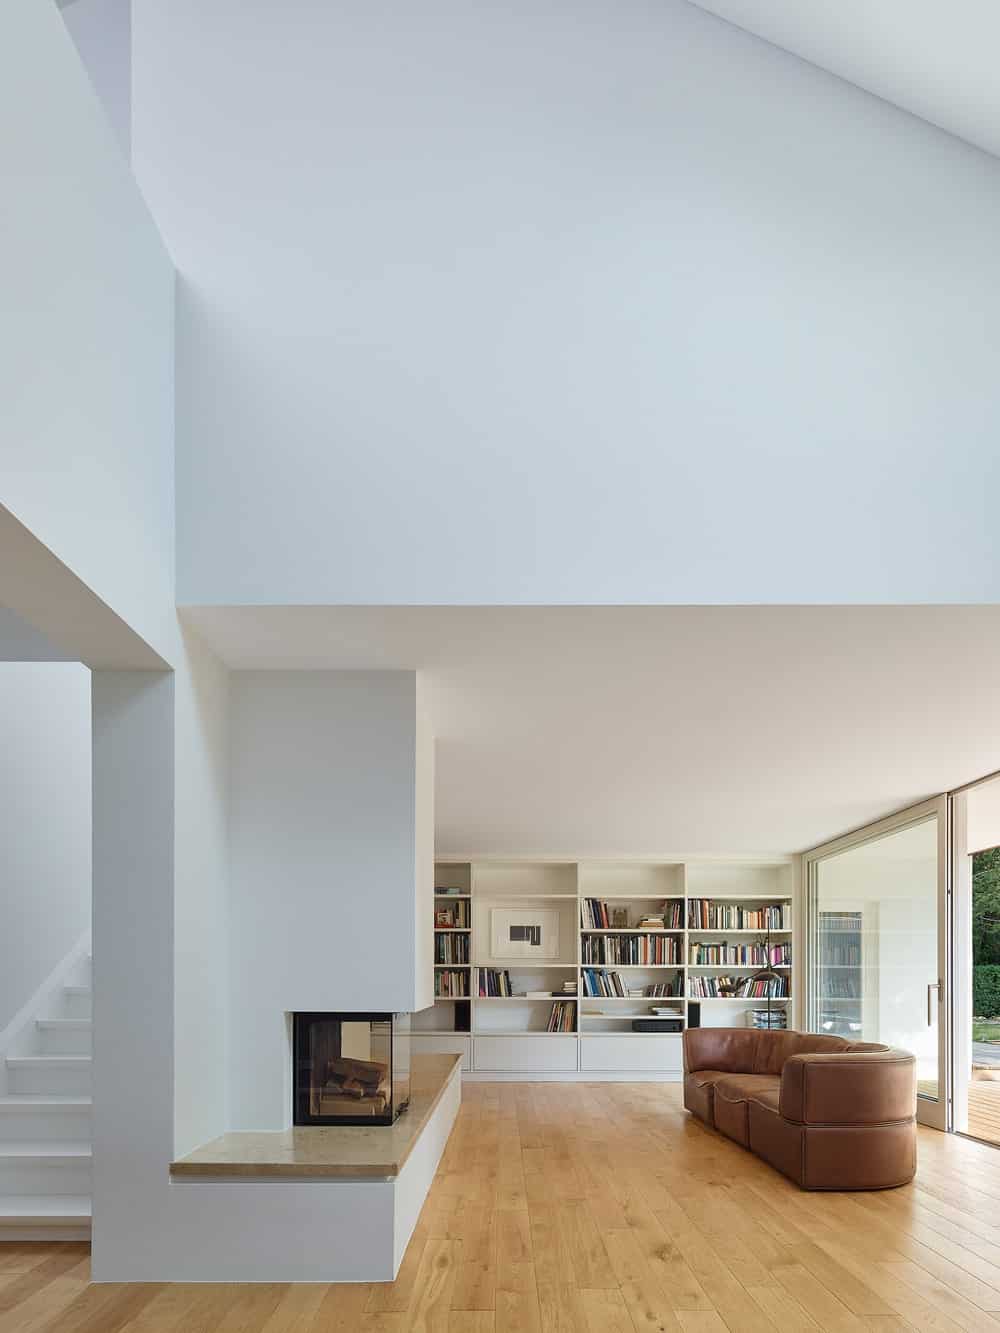 客厅明亮的白色墙壁、天花板和书架与组合沙发、壁炉和展示的书籍形成对比。